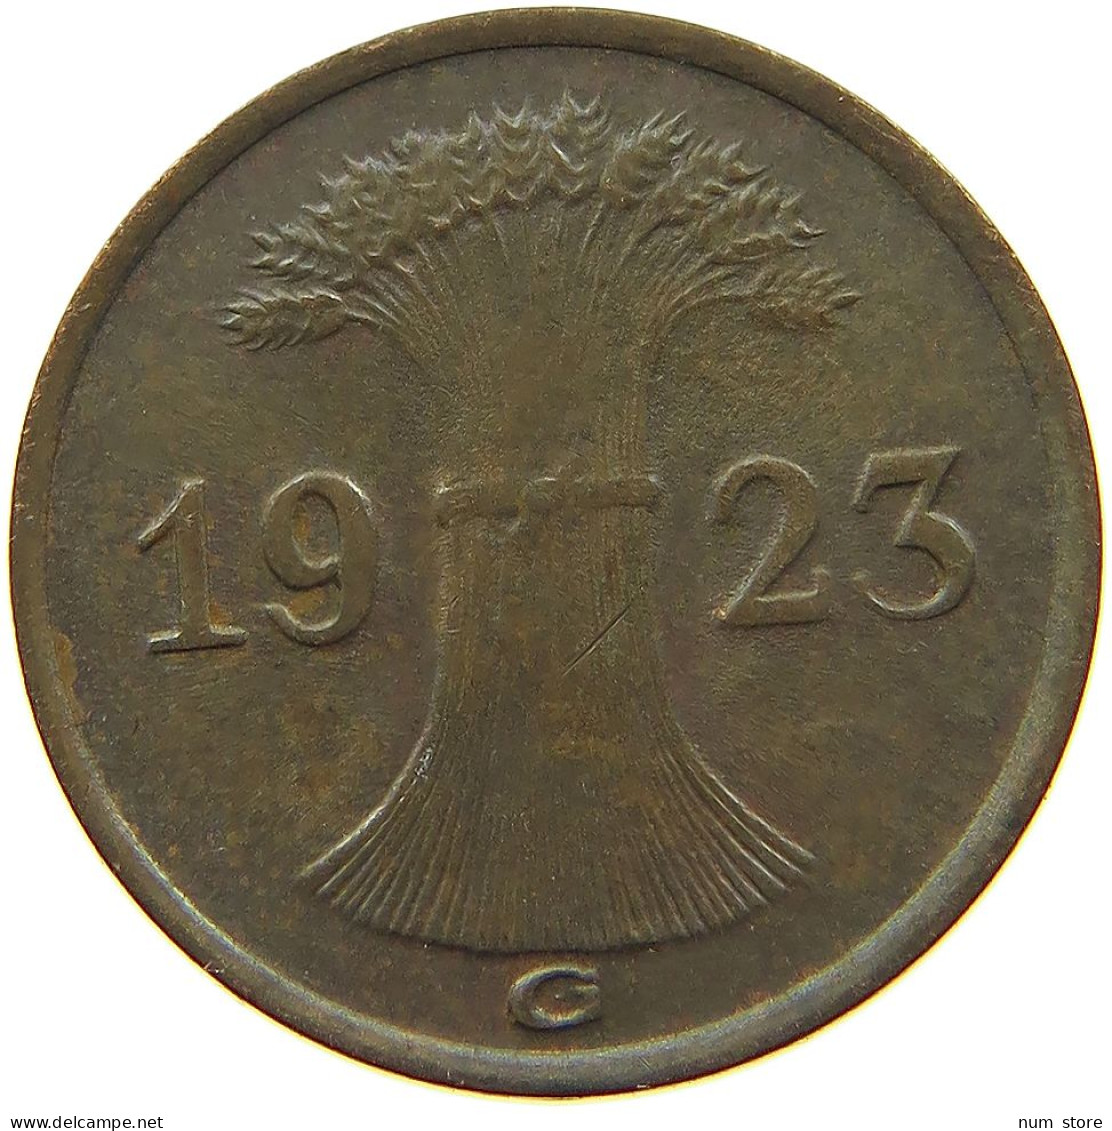 WEIMARER REPUBLIK RENTENPFENNIG 1923 G  #MA 100188 - 1 Renten- & 1 Reichspfennig